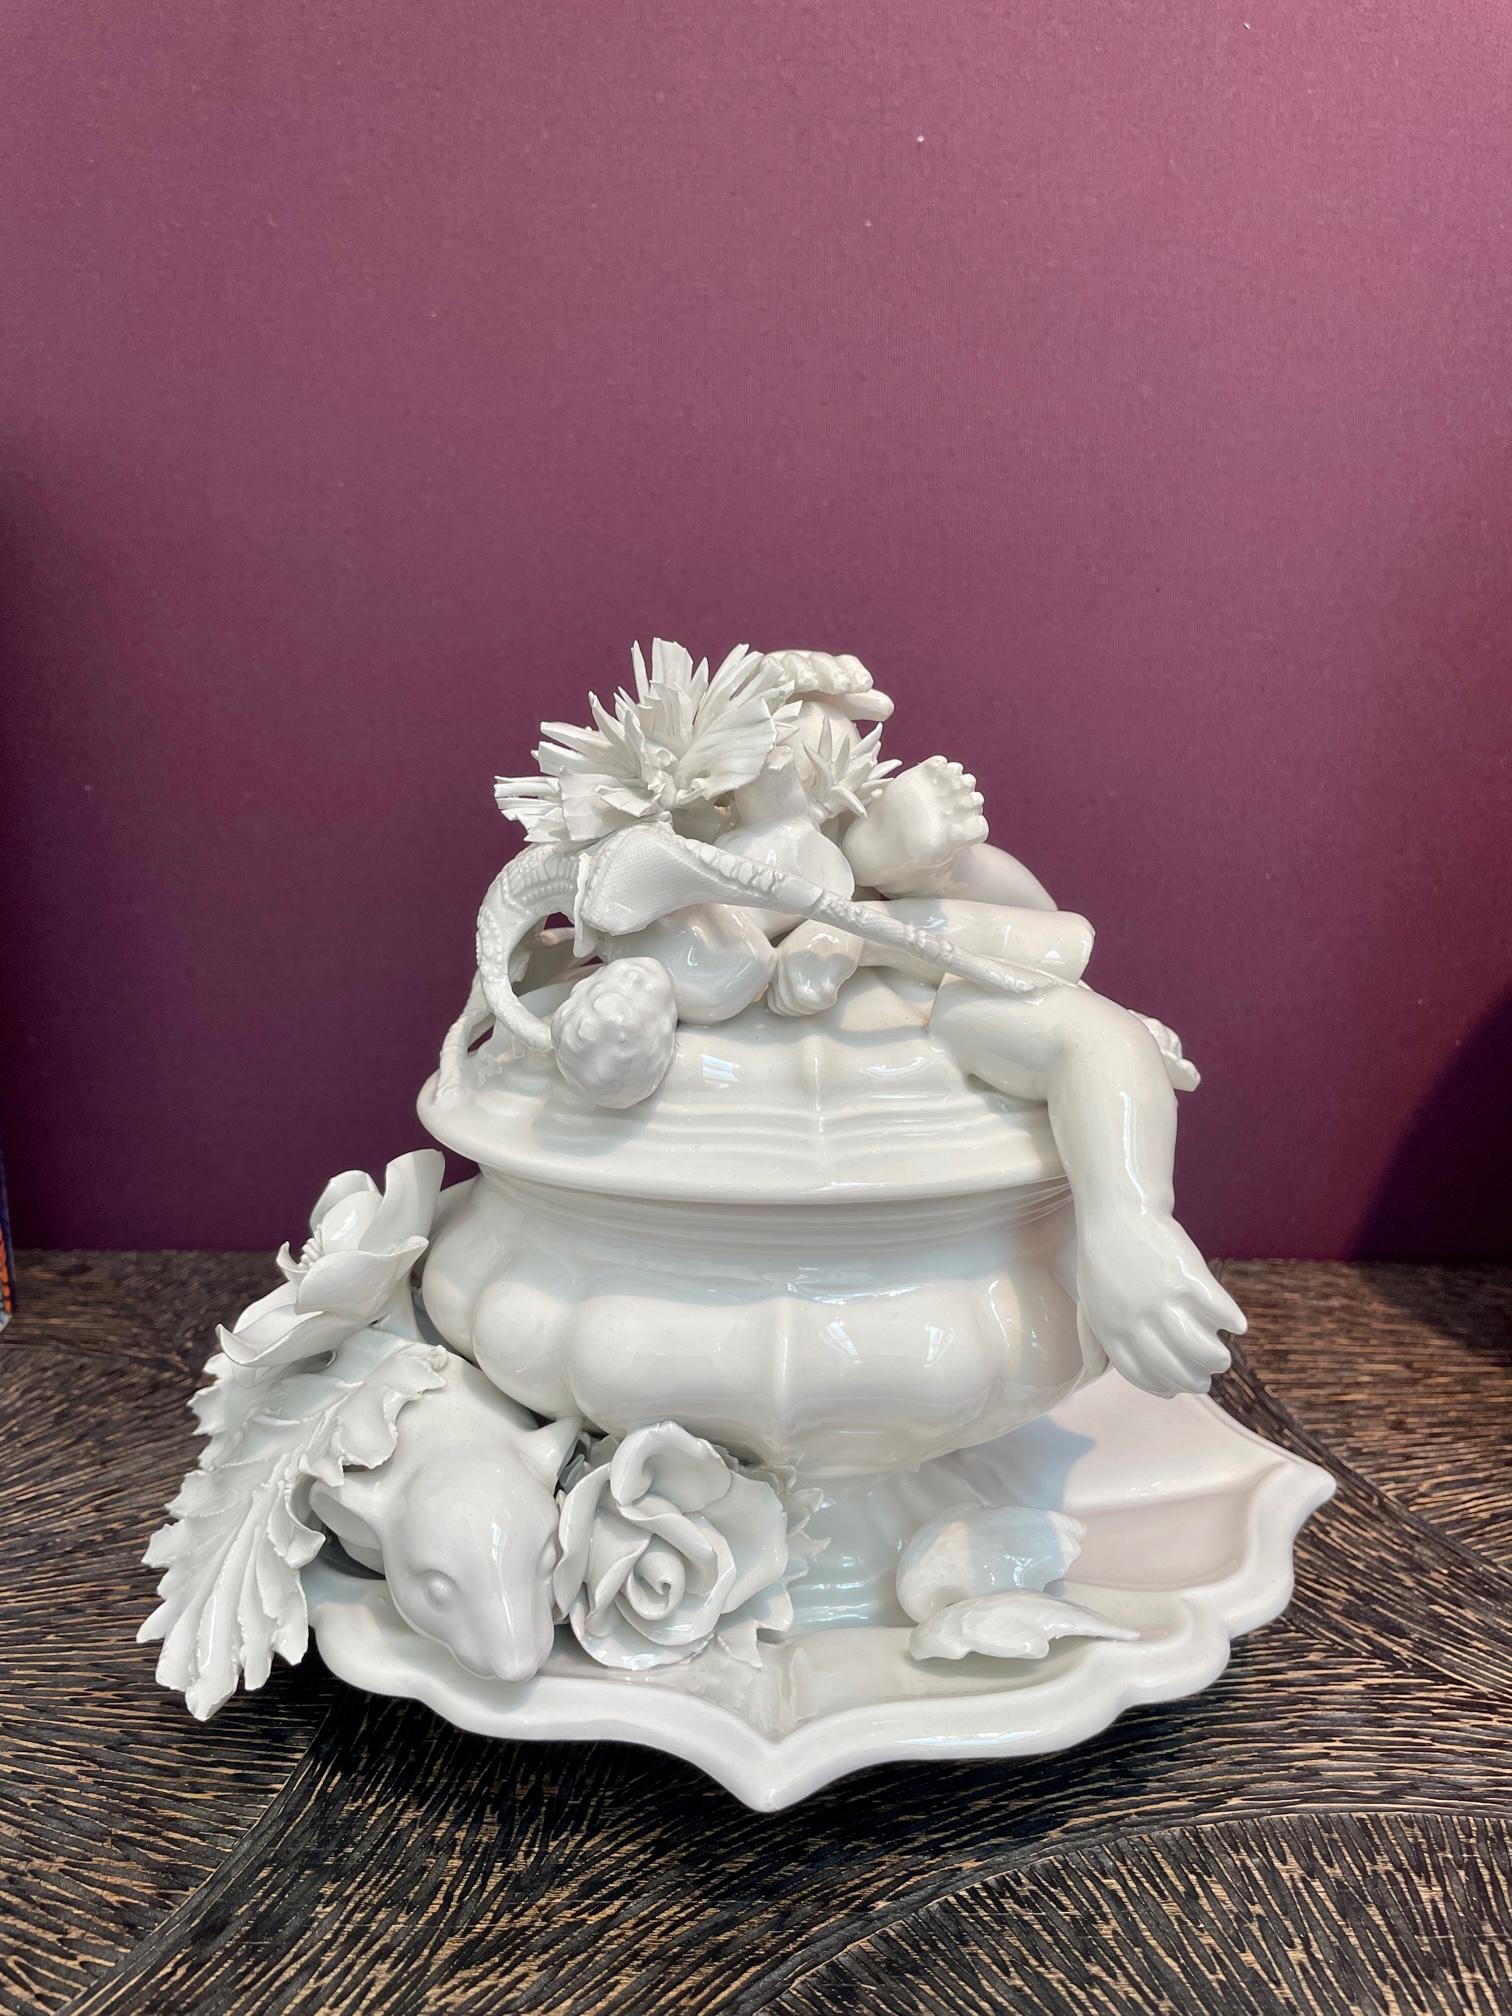 Renzi & Reale, Baroque Rain, 2003, glasiertes Steingut. Maße: 23 x 23 x 21 cm 

Weiße Keramikskulptur des renommierten Designer-Duos Renzi & Reale, das von Anfang der Neunziger bis Anfang der 2000er Jahre erfolgreich zusammenarbeitete. Es gibt nur